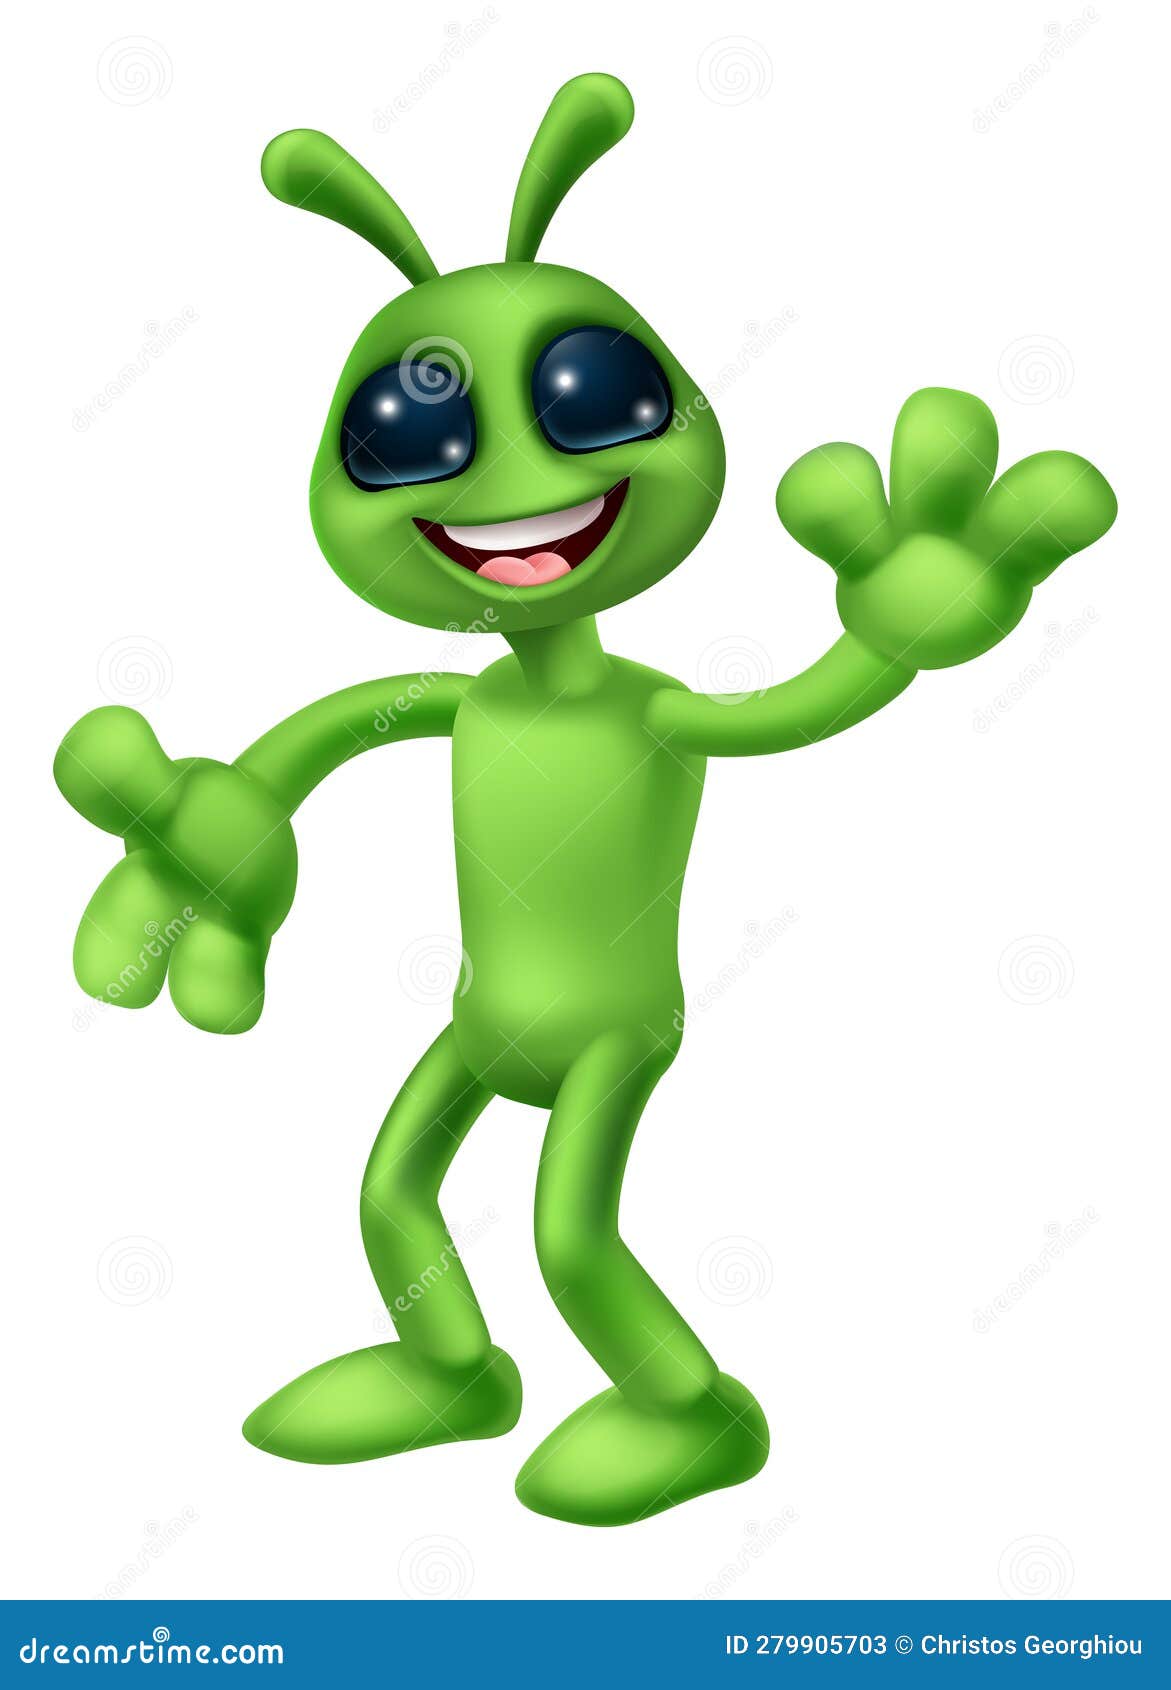 Ilustração de mascote alienígena engraçado